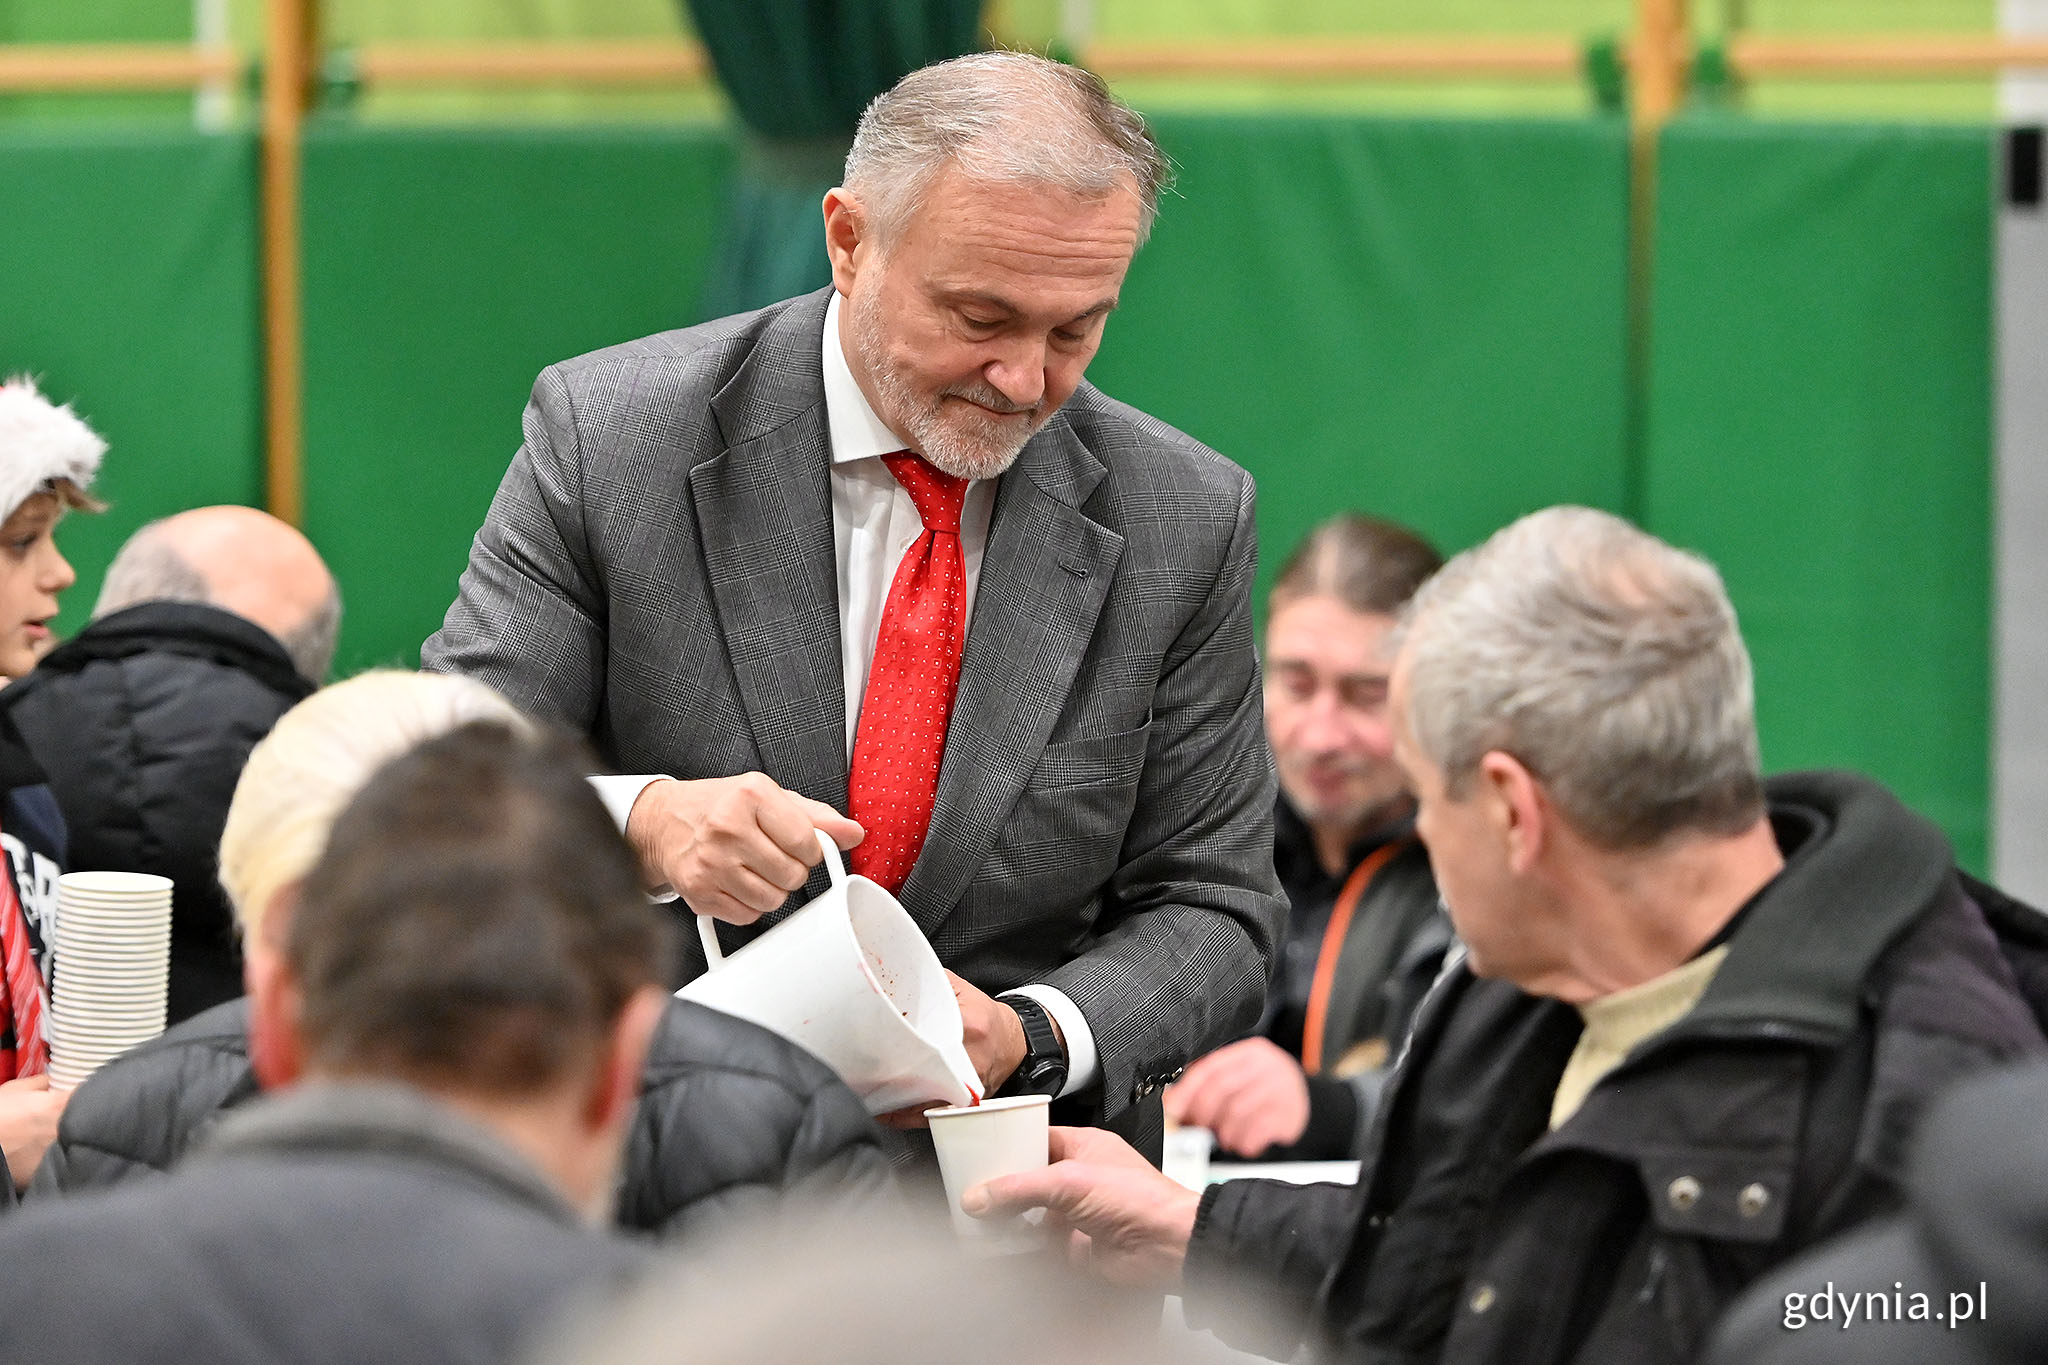 Na zdj. prezydent Wojciech Szczurek na gdyńskiej wigilii nalewa barszcz dla jednego z gości wieczerzy